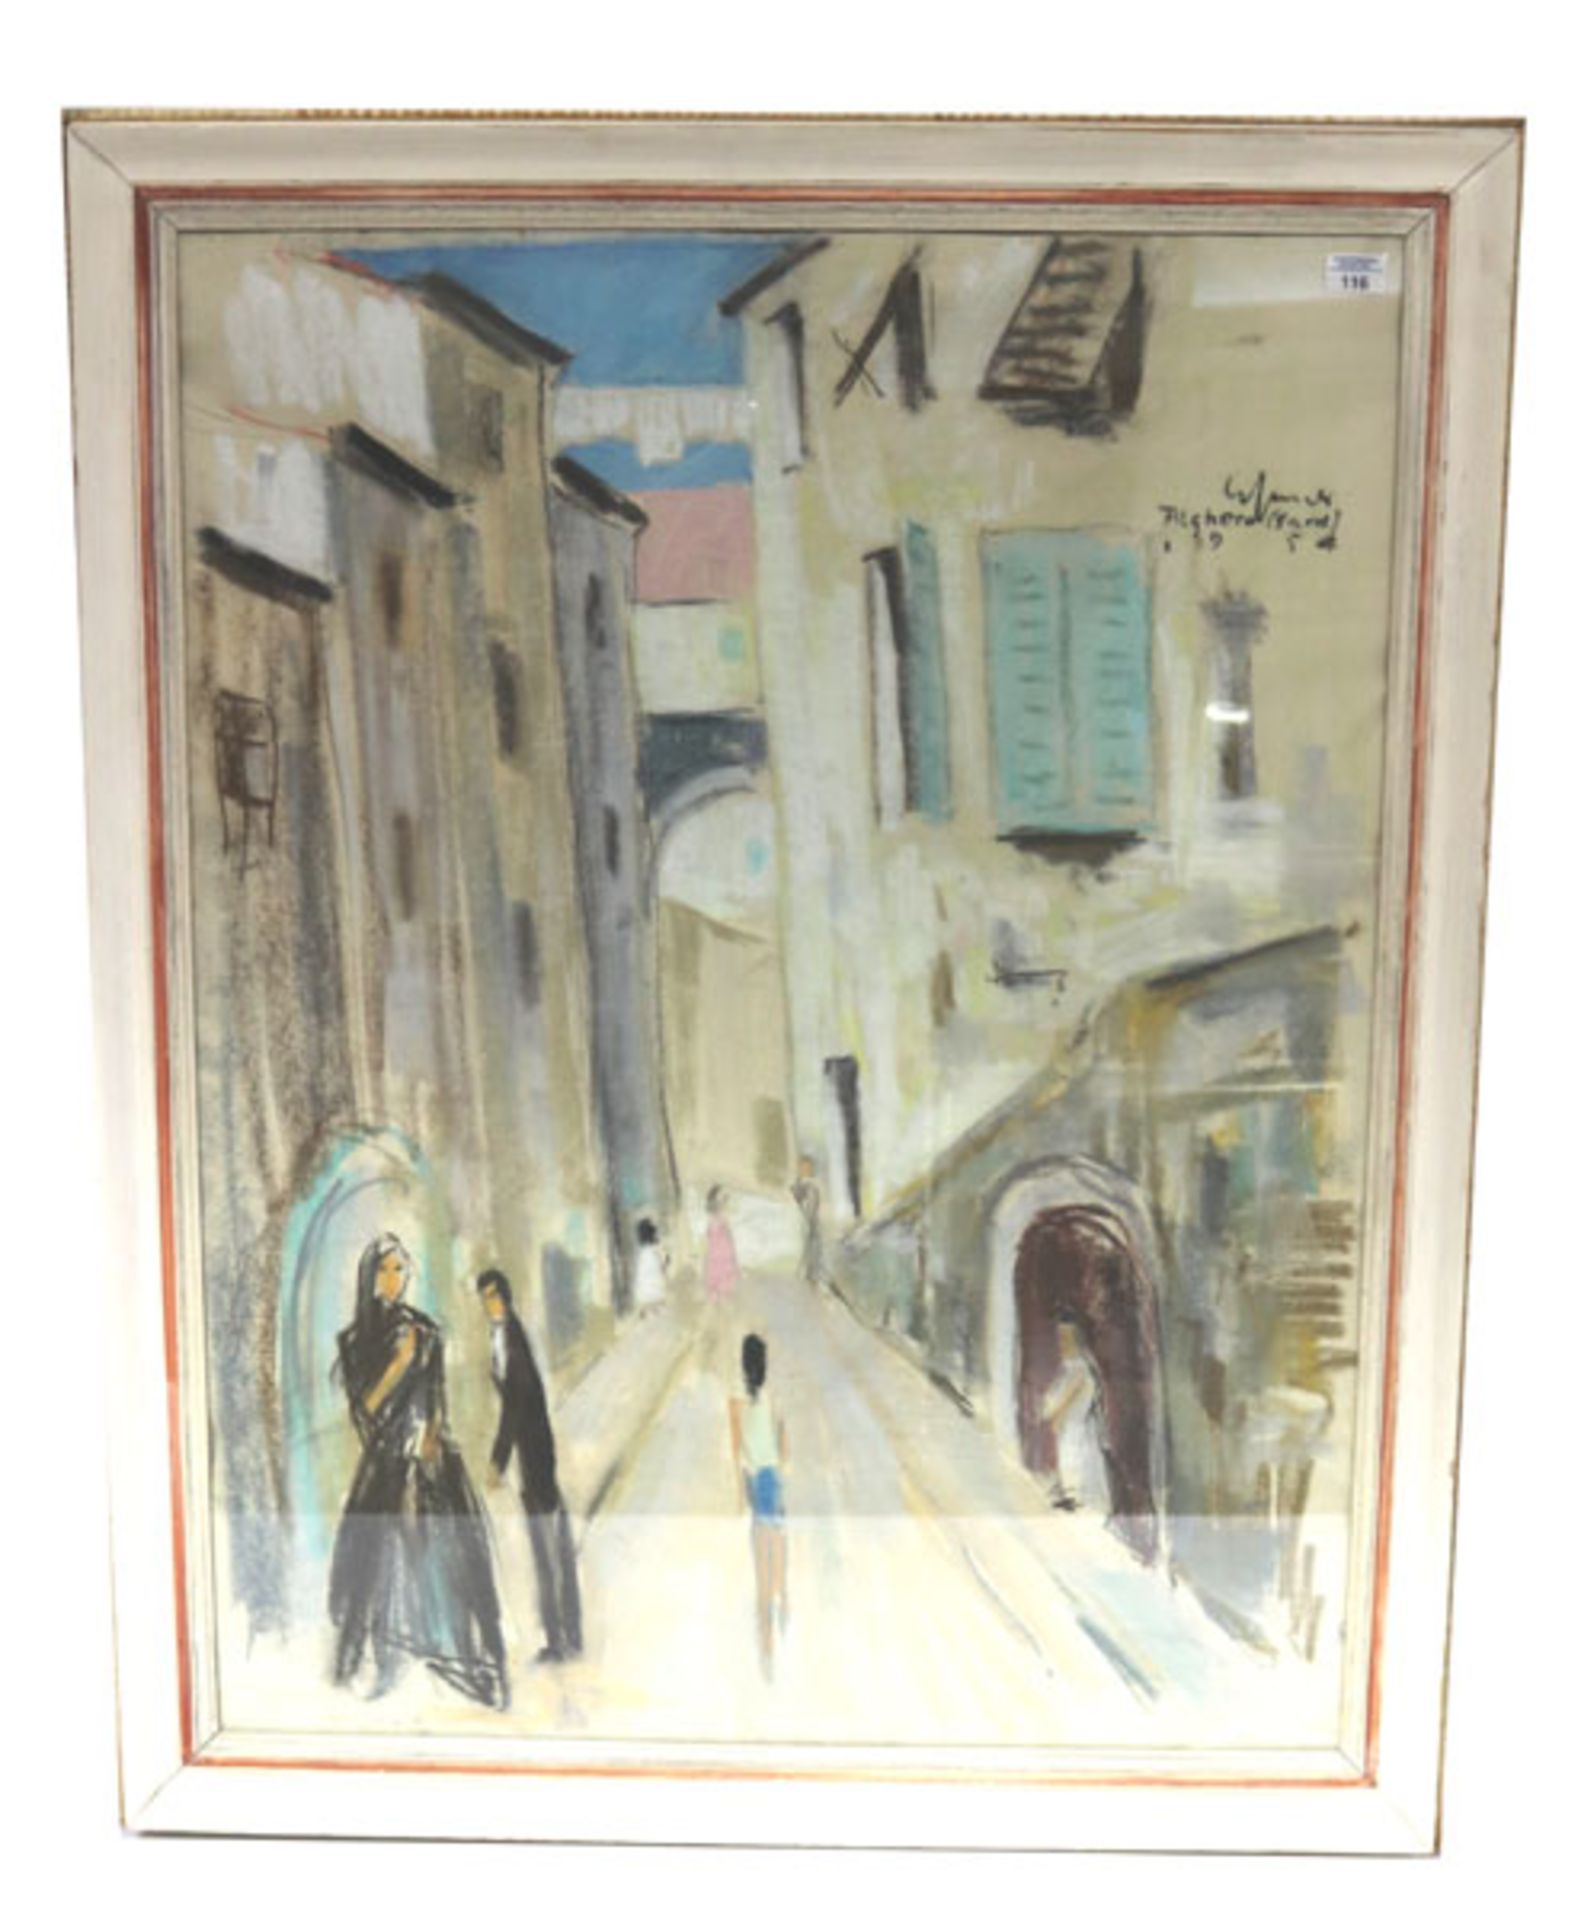 Pastellgemälde 'Strassen-Szenerie mit Personen', undeutlich signiert und bez. Alghera (gard) 1954,